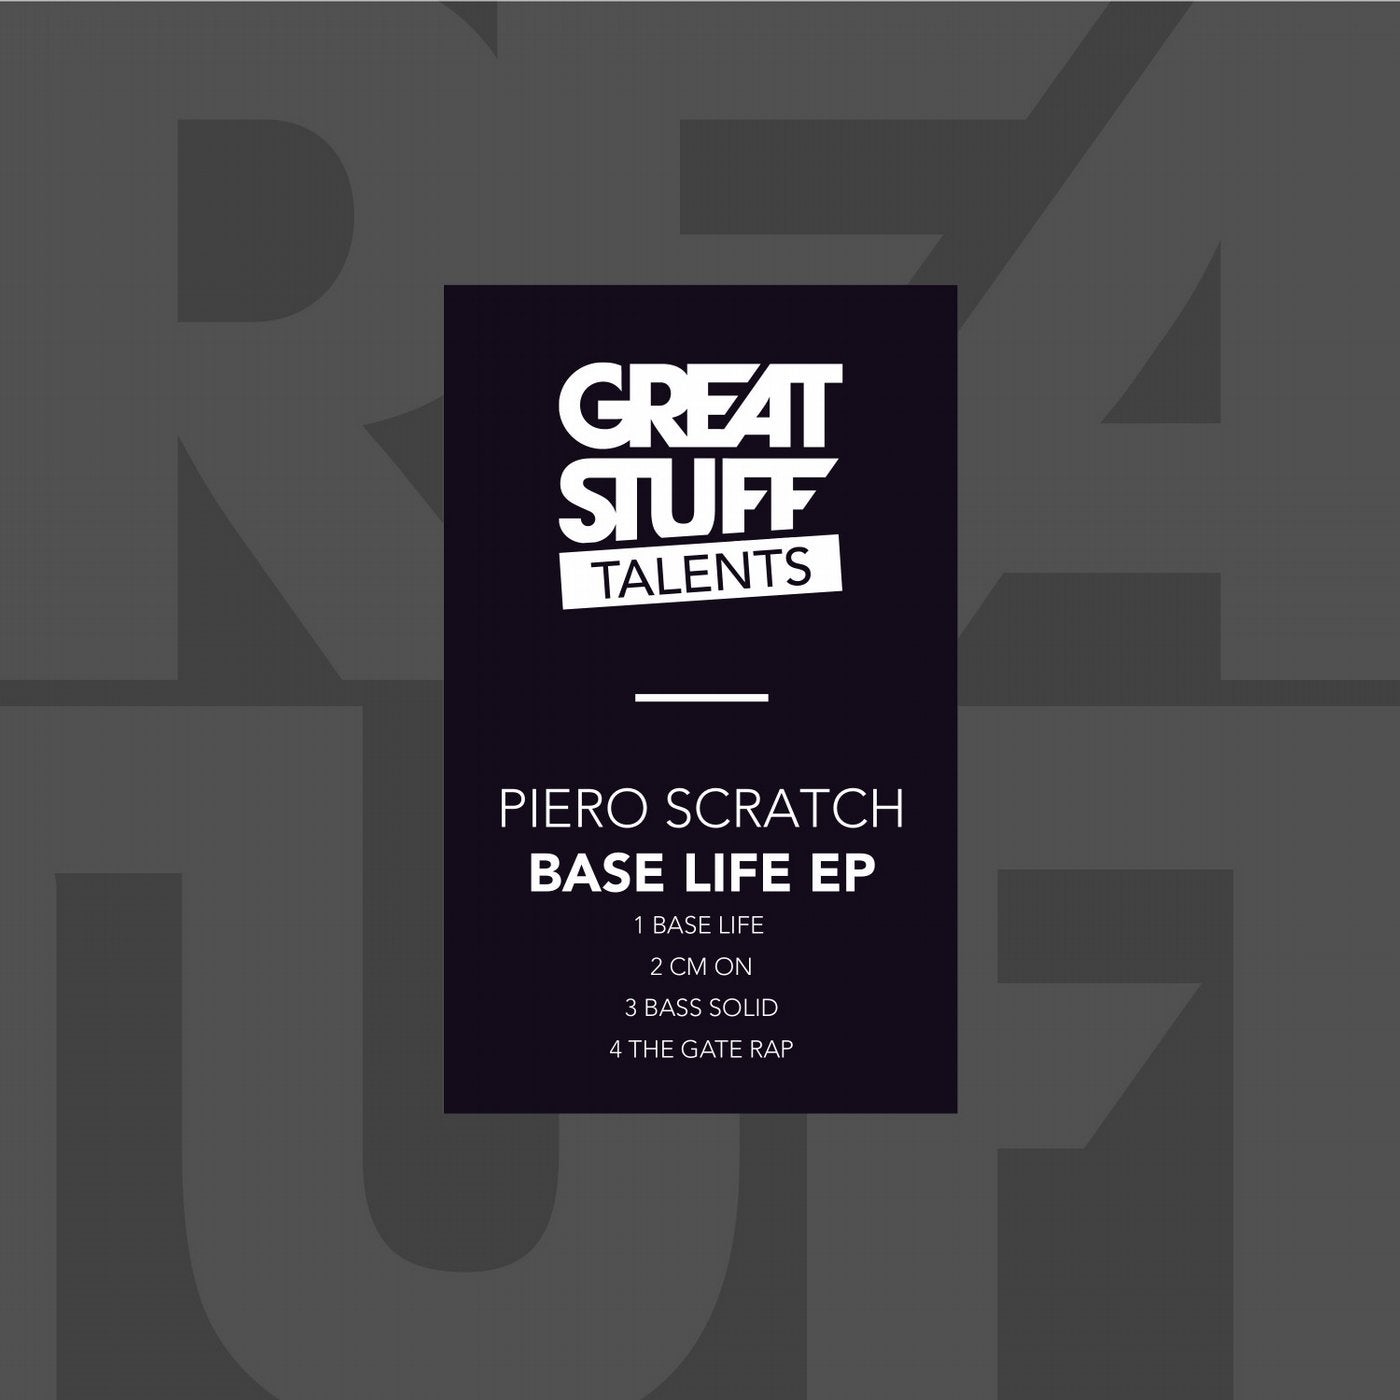 Base Life EP